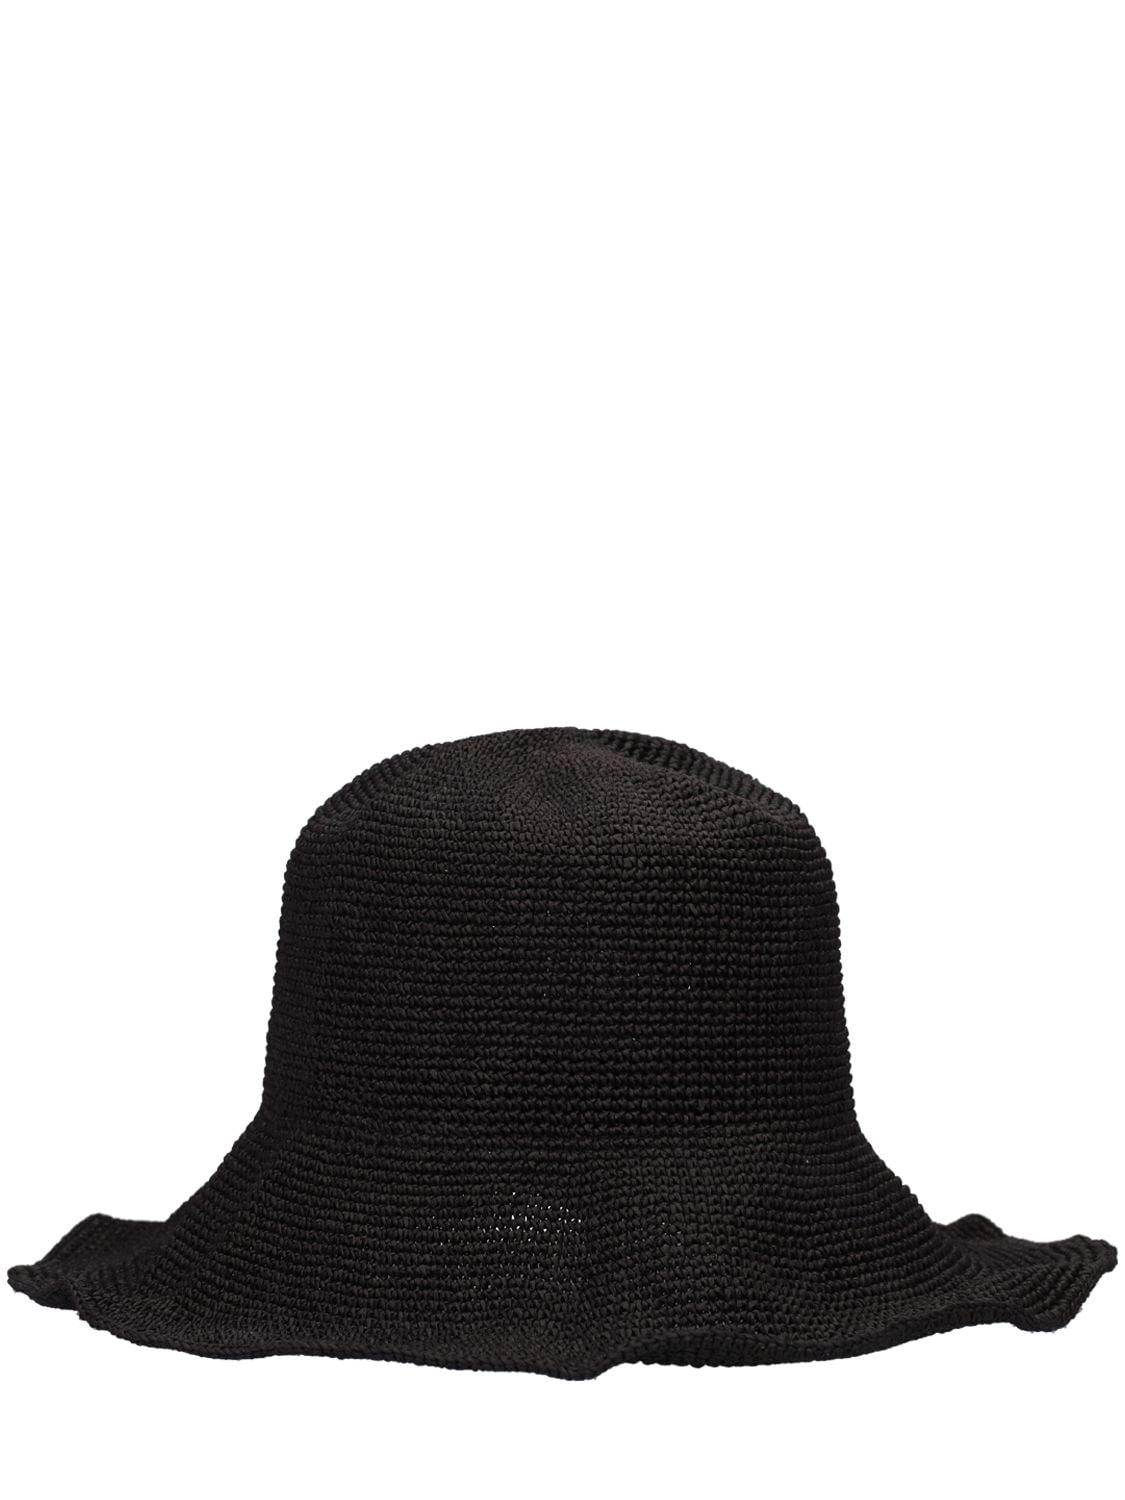 Totême Woven Paper & Straw Hat In Black